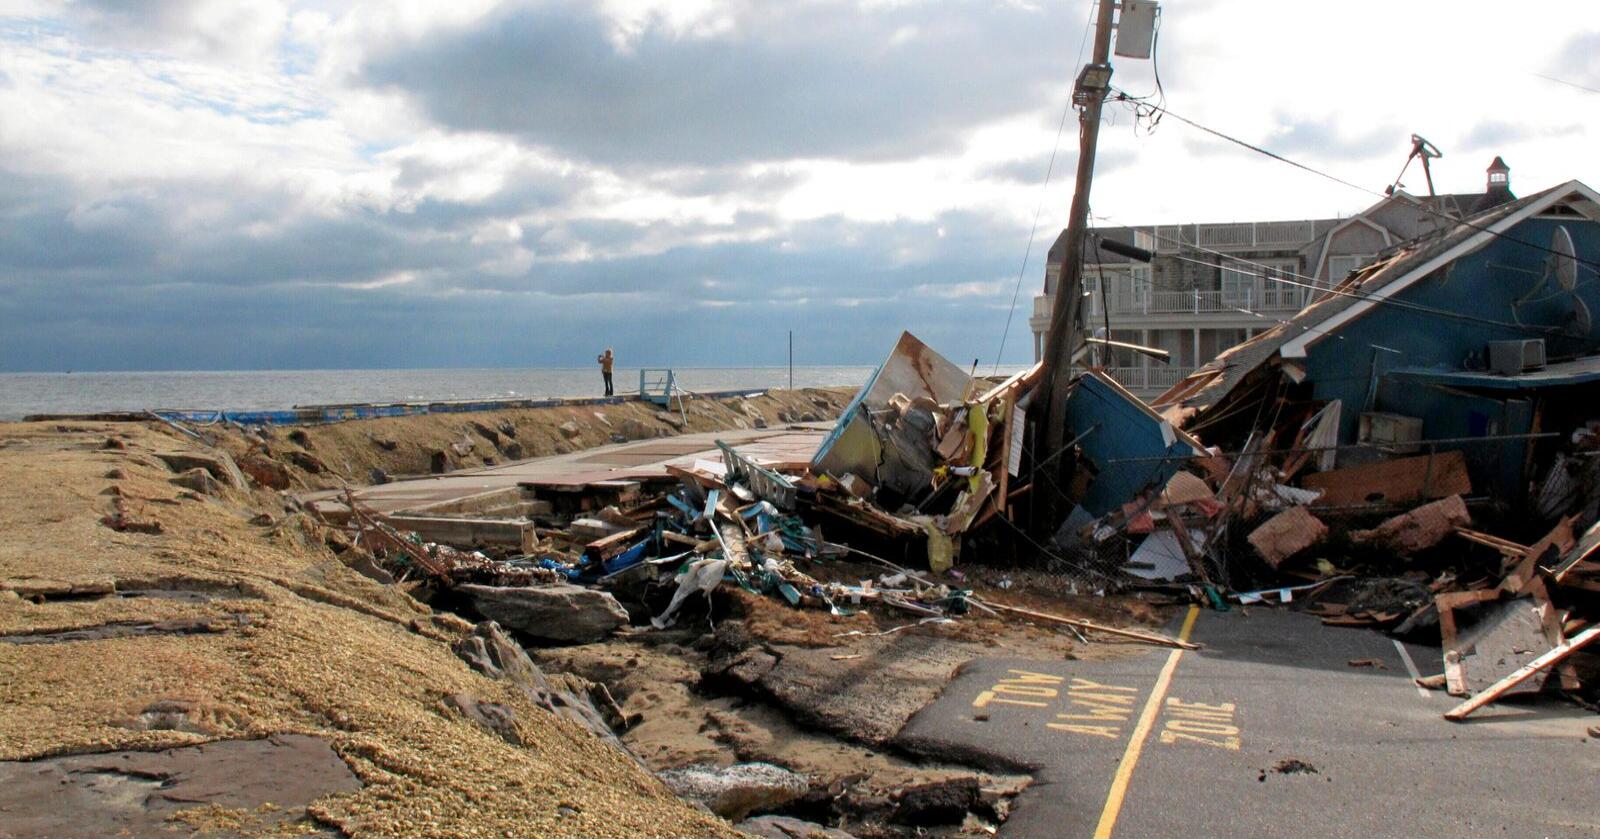 Ødeleggelsene etter "Superstorm Sandy" i 2012 ble verdsatt til 70 milliarder USD. 233 mennesker mistet livet som følge av orkanens herjinger. Foto: Wayne Parry / AP / NTB 